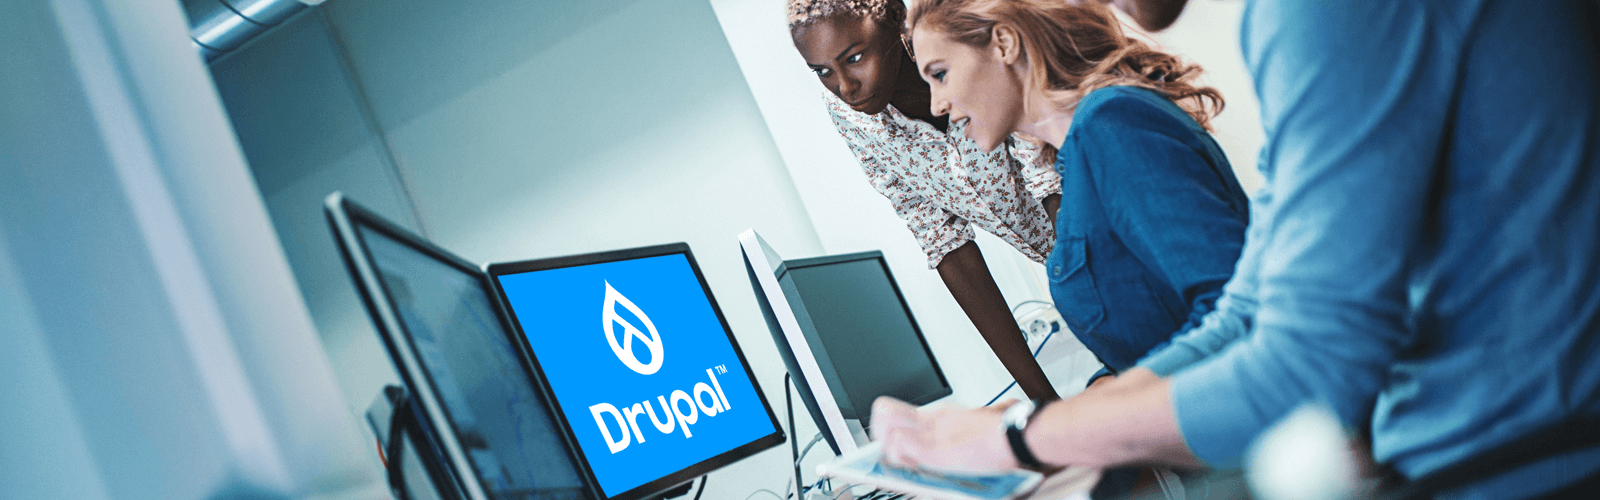 drupal websites showcase